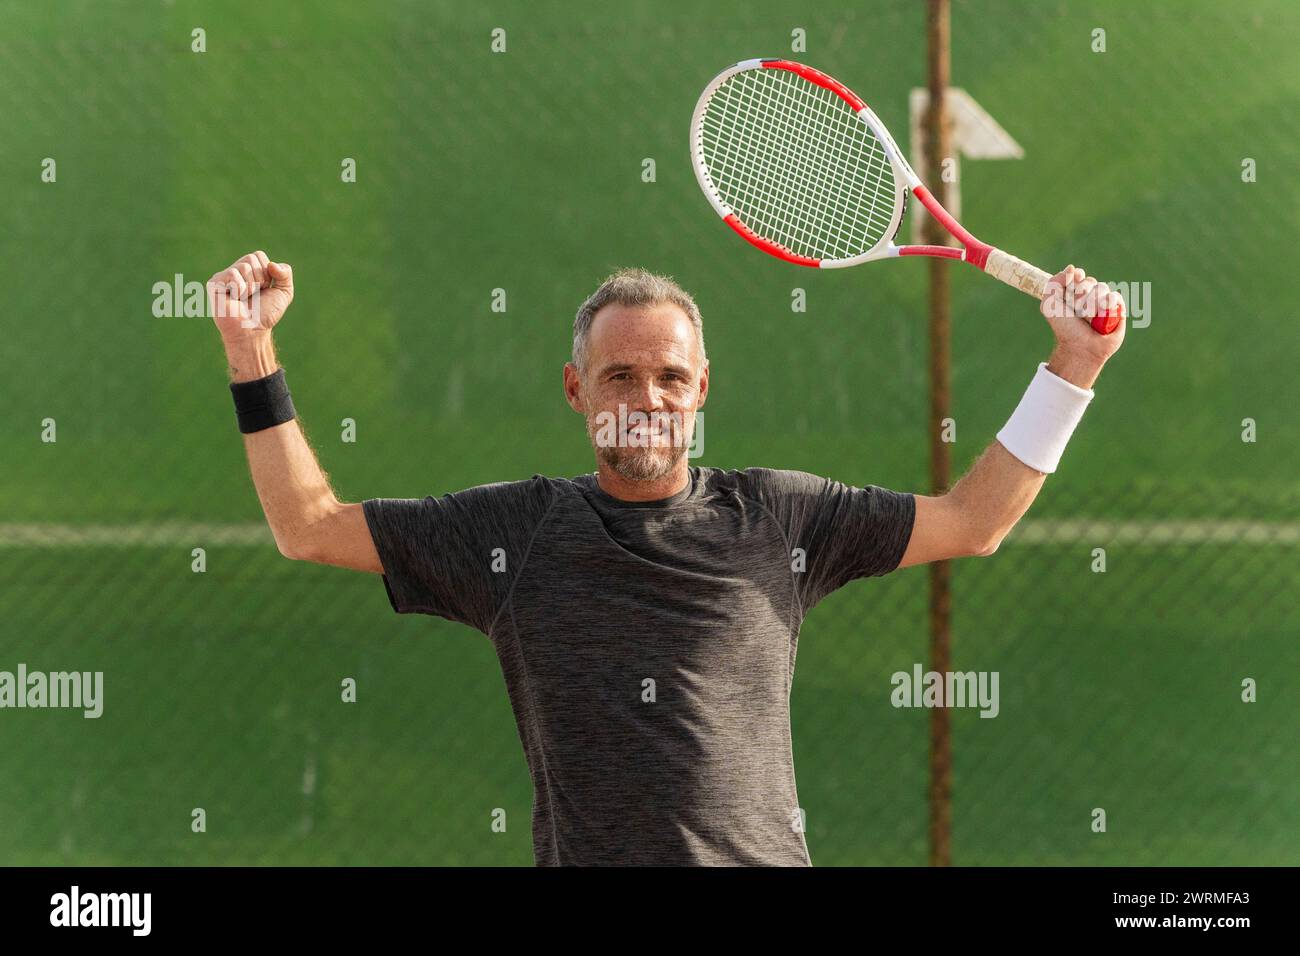 Ein fröhlicher Tennisspieler feiert einen Sieg auf dem Tennisplatz, hält seinen Schläger triumphierend und blickt mit einem stolzen Lächeln in die Kamera. Stockfoto